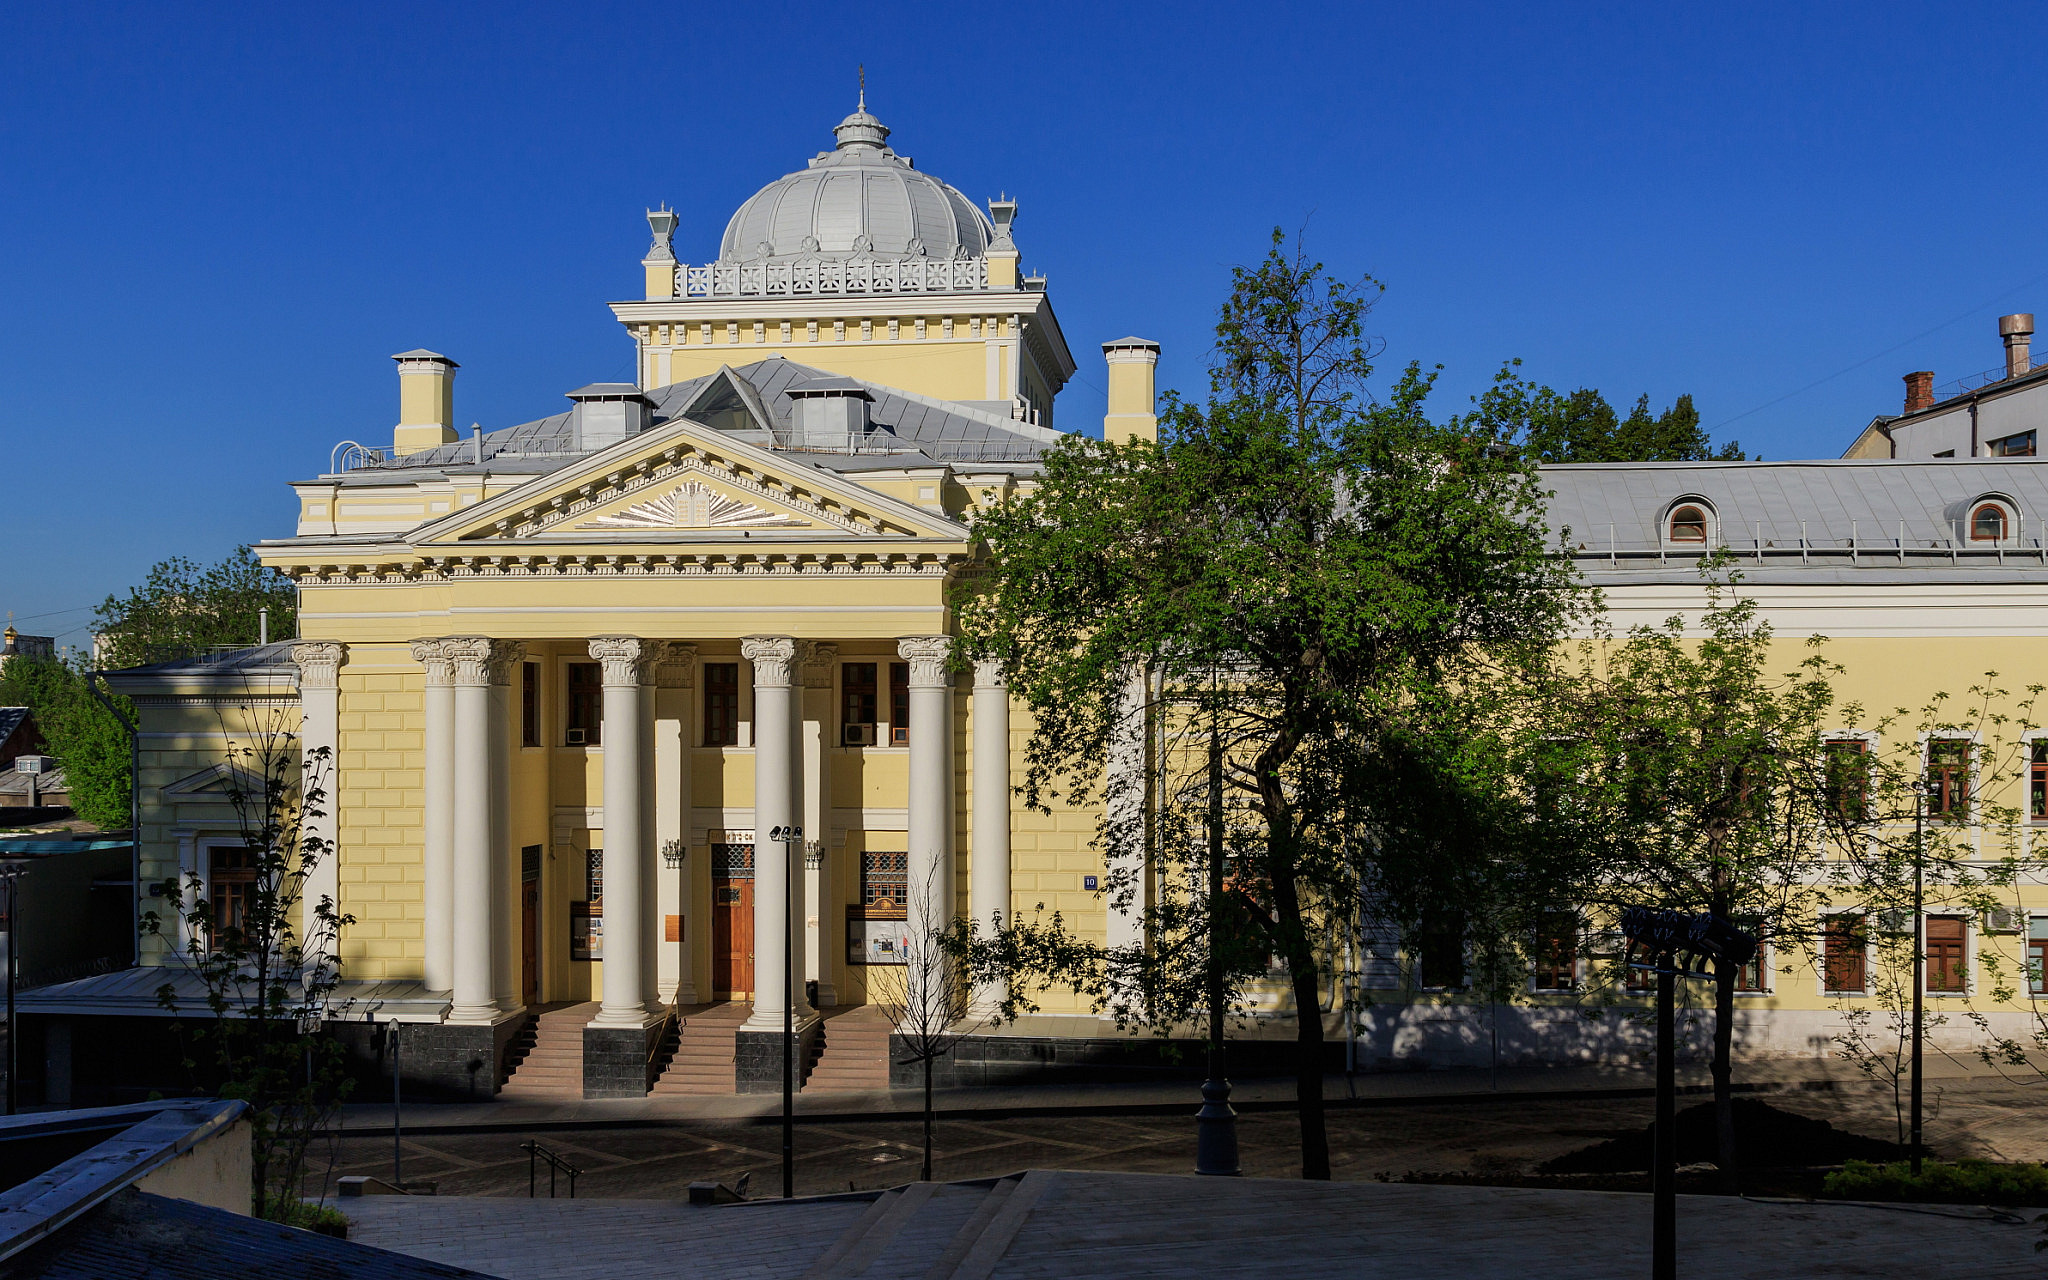 בית הכנסת הכוראלי במוסקבה. מבט מבחוץ (צילום: א. סאבין, ויקיפדיה)